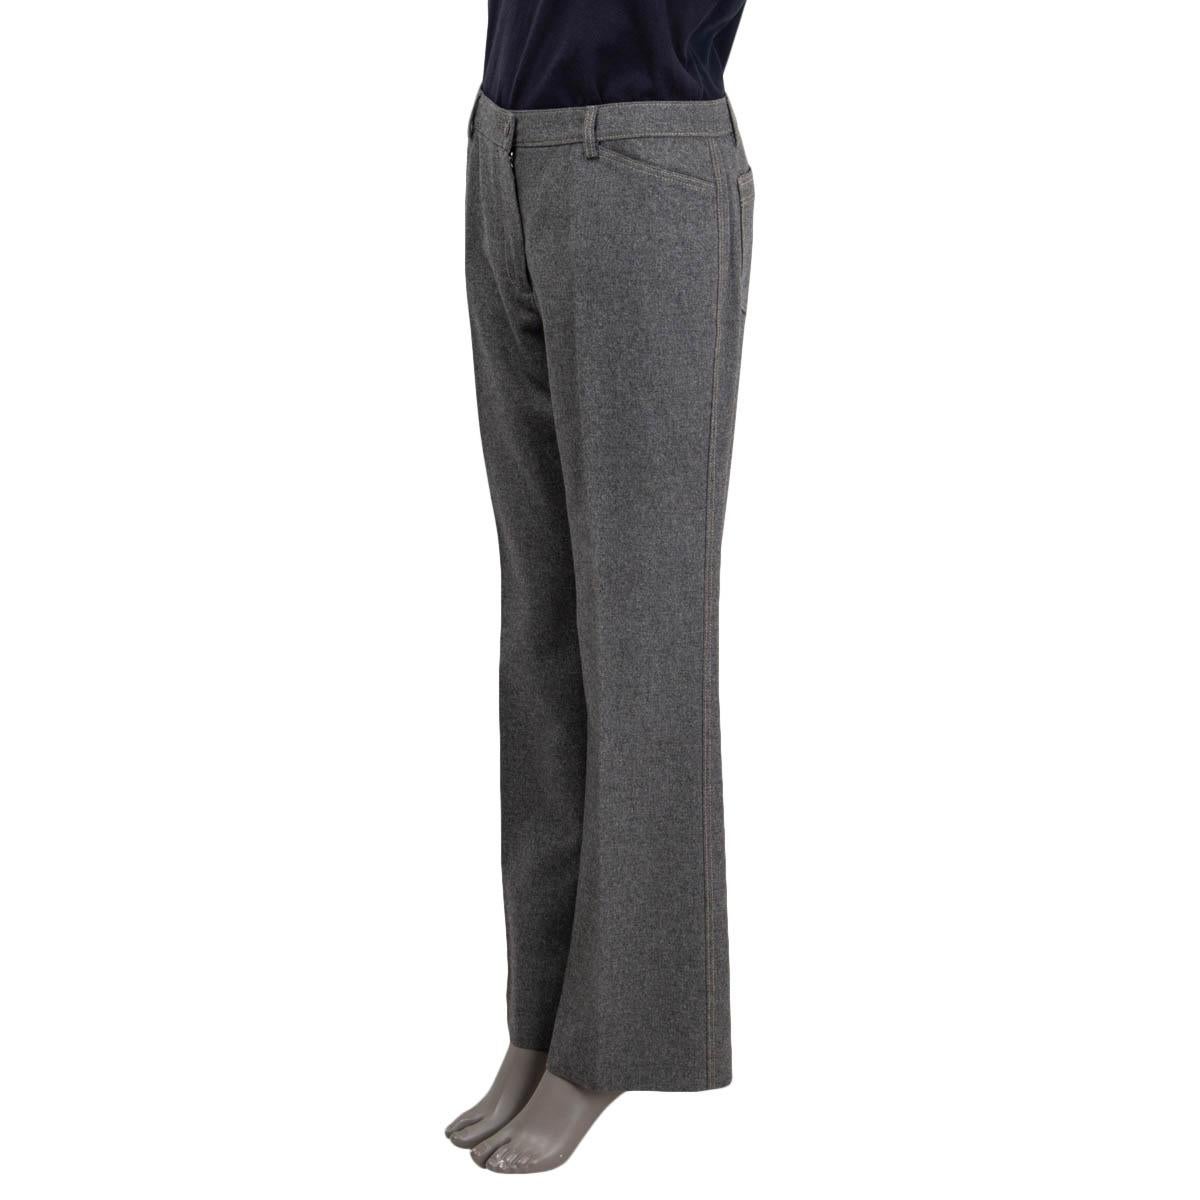 100% authentische Chanel 2005 Hose mit weitem Bein aus grauer Wolle (100%) mit Gürtelschlaufen, zwei Seitentaschen und zwei aufgesetzten Taschen auf der Rückseite. Zu schließen mit einem Chanel Logo-Knopf und einem verdeckten Reißverschluss auf der